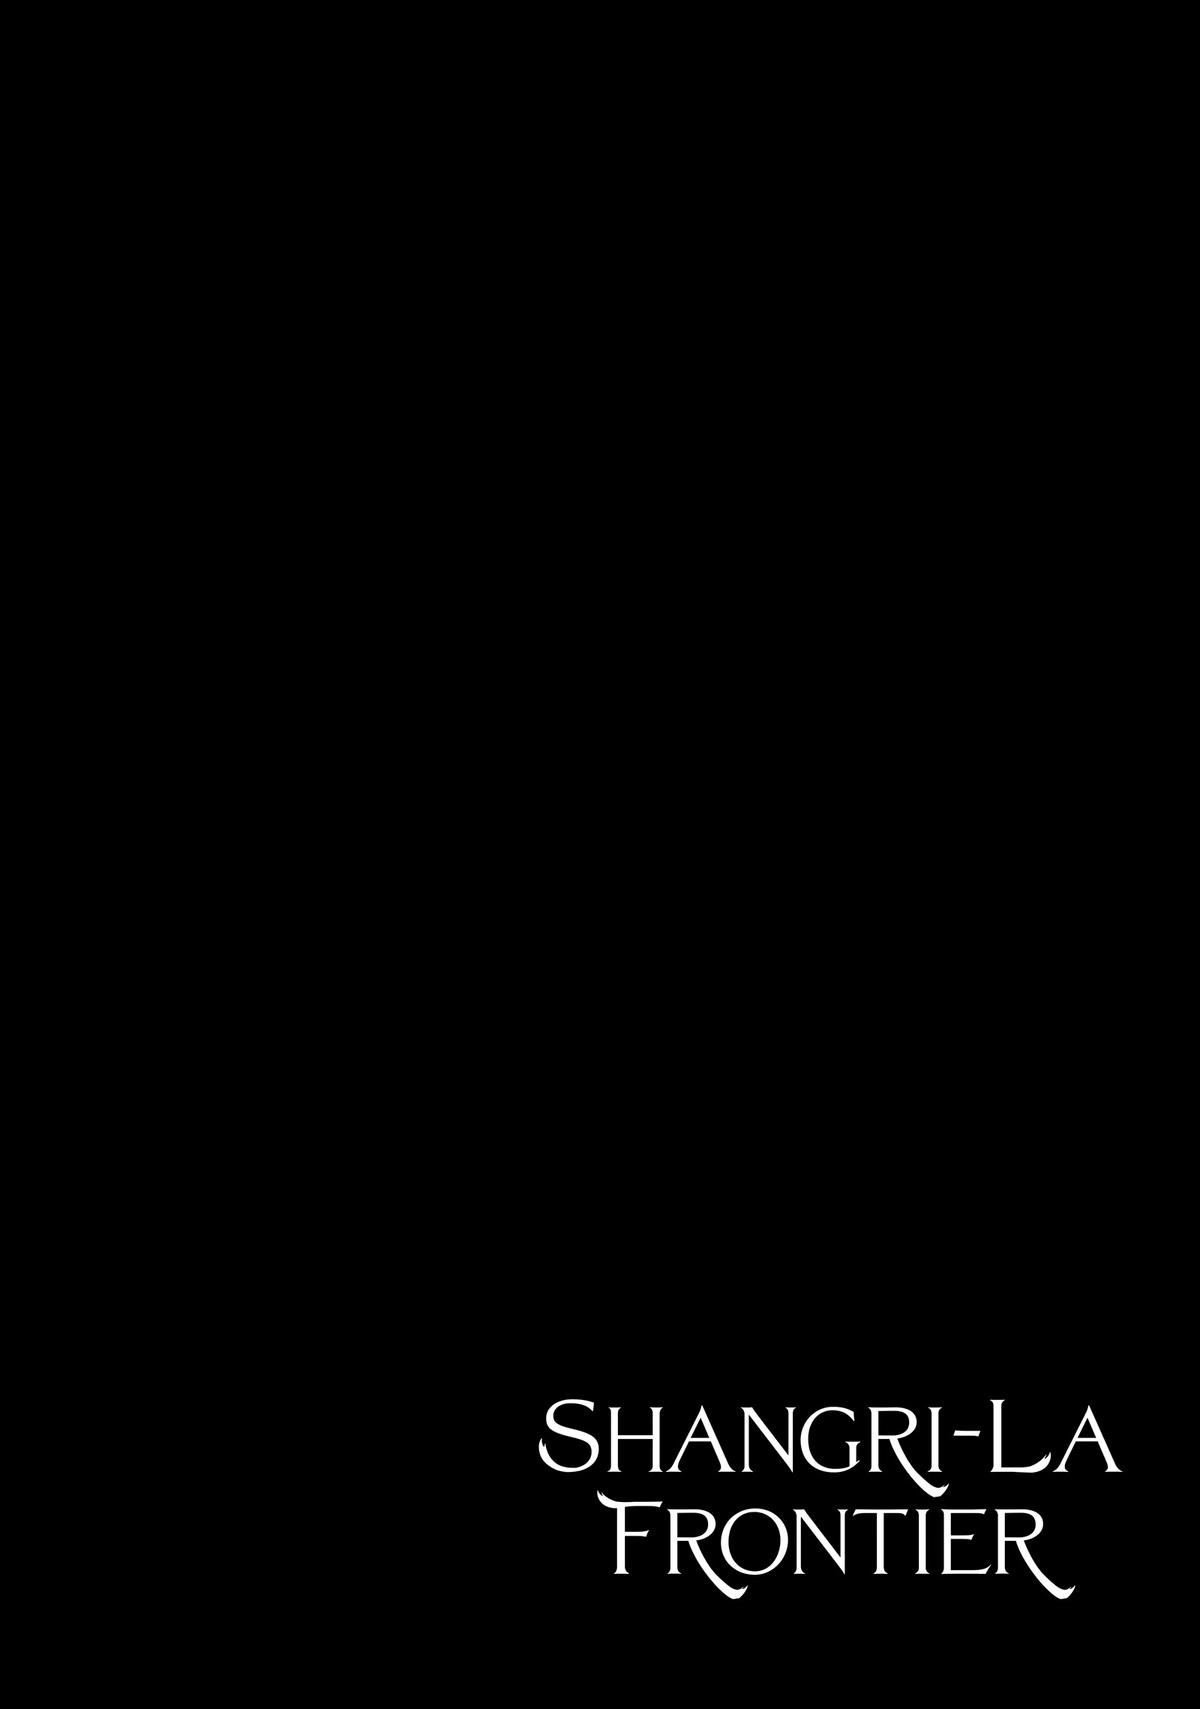 Shangri-la Frontier, Chapter 100 image 02